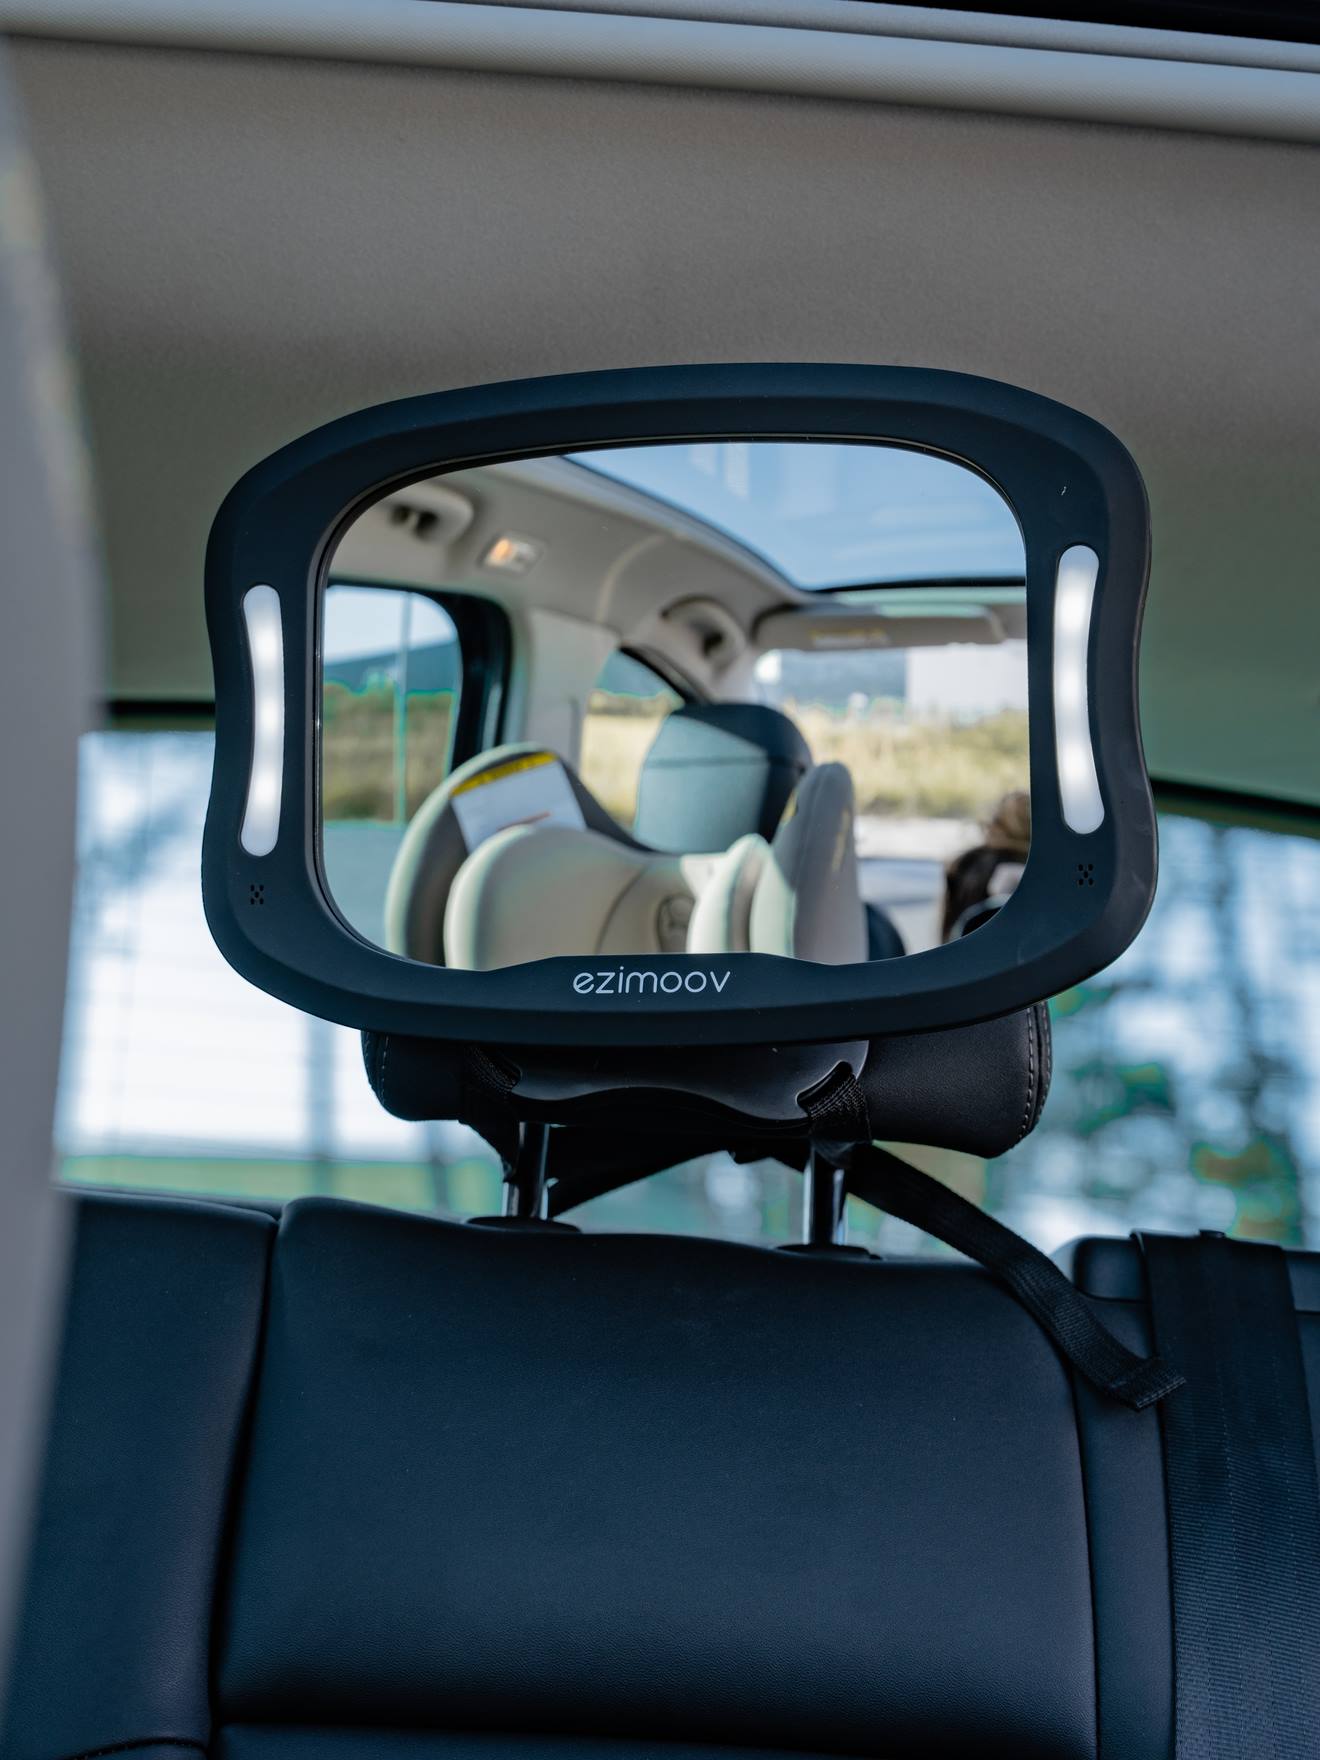 Baby Auto Spiegel 360° - Rücksitzspiegel für Kopfstützen